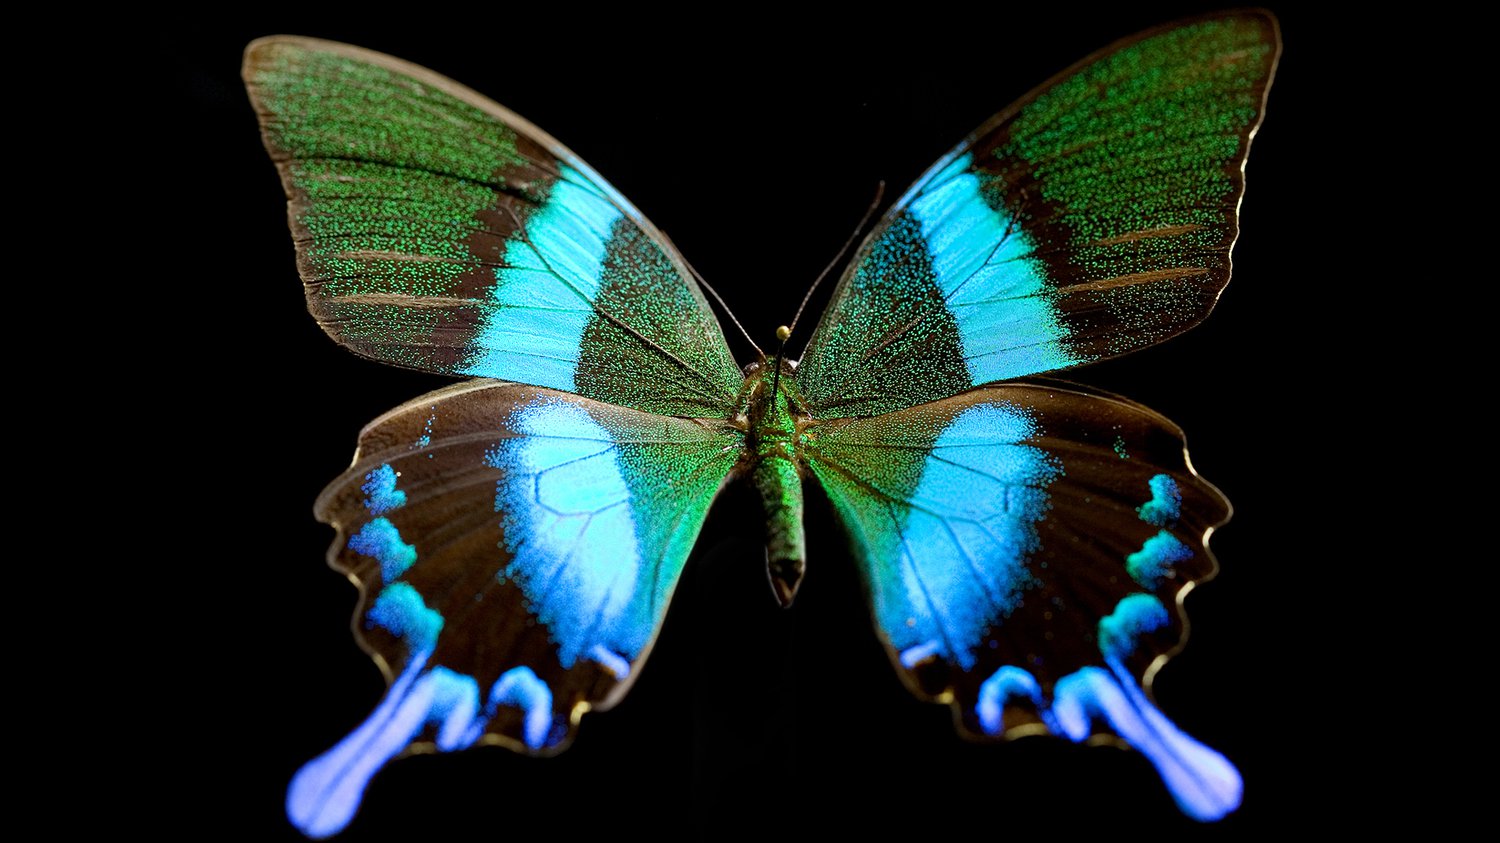 The Hidden Secrets of Butterflies